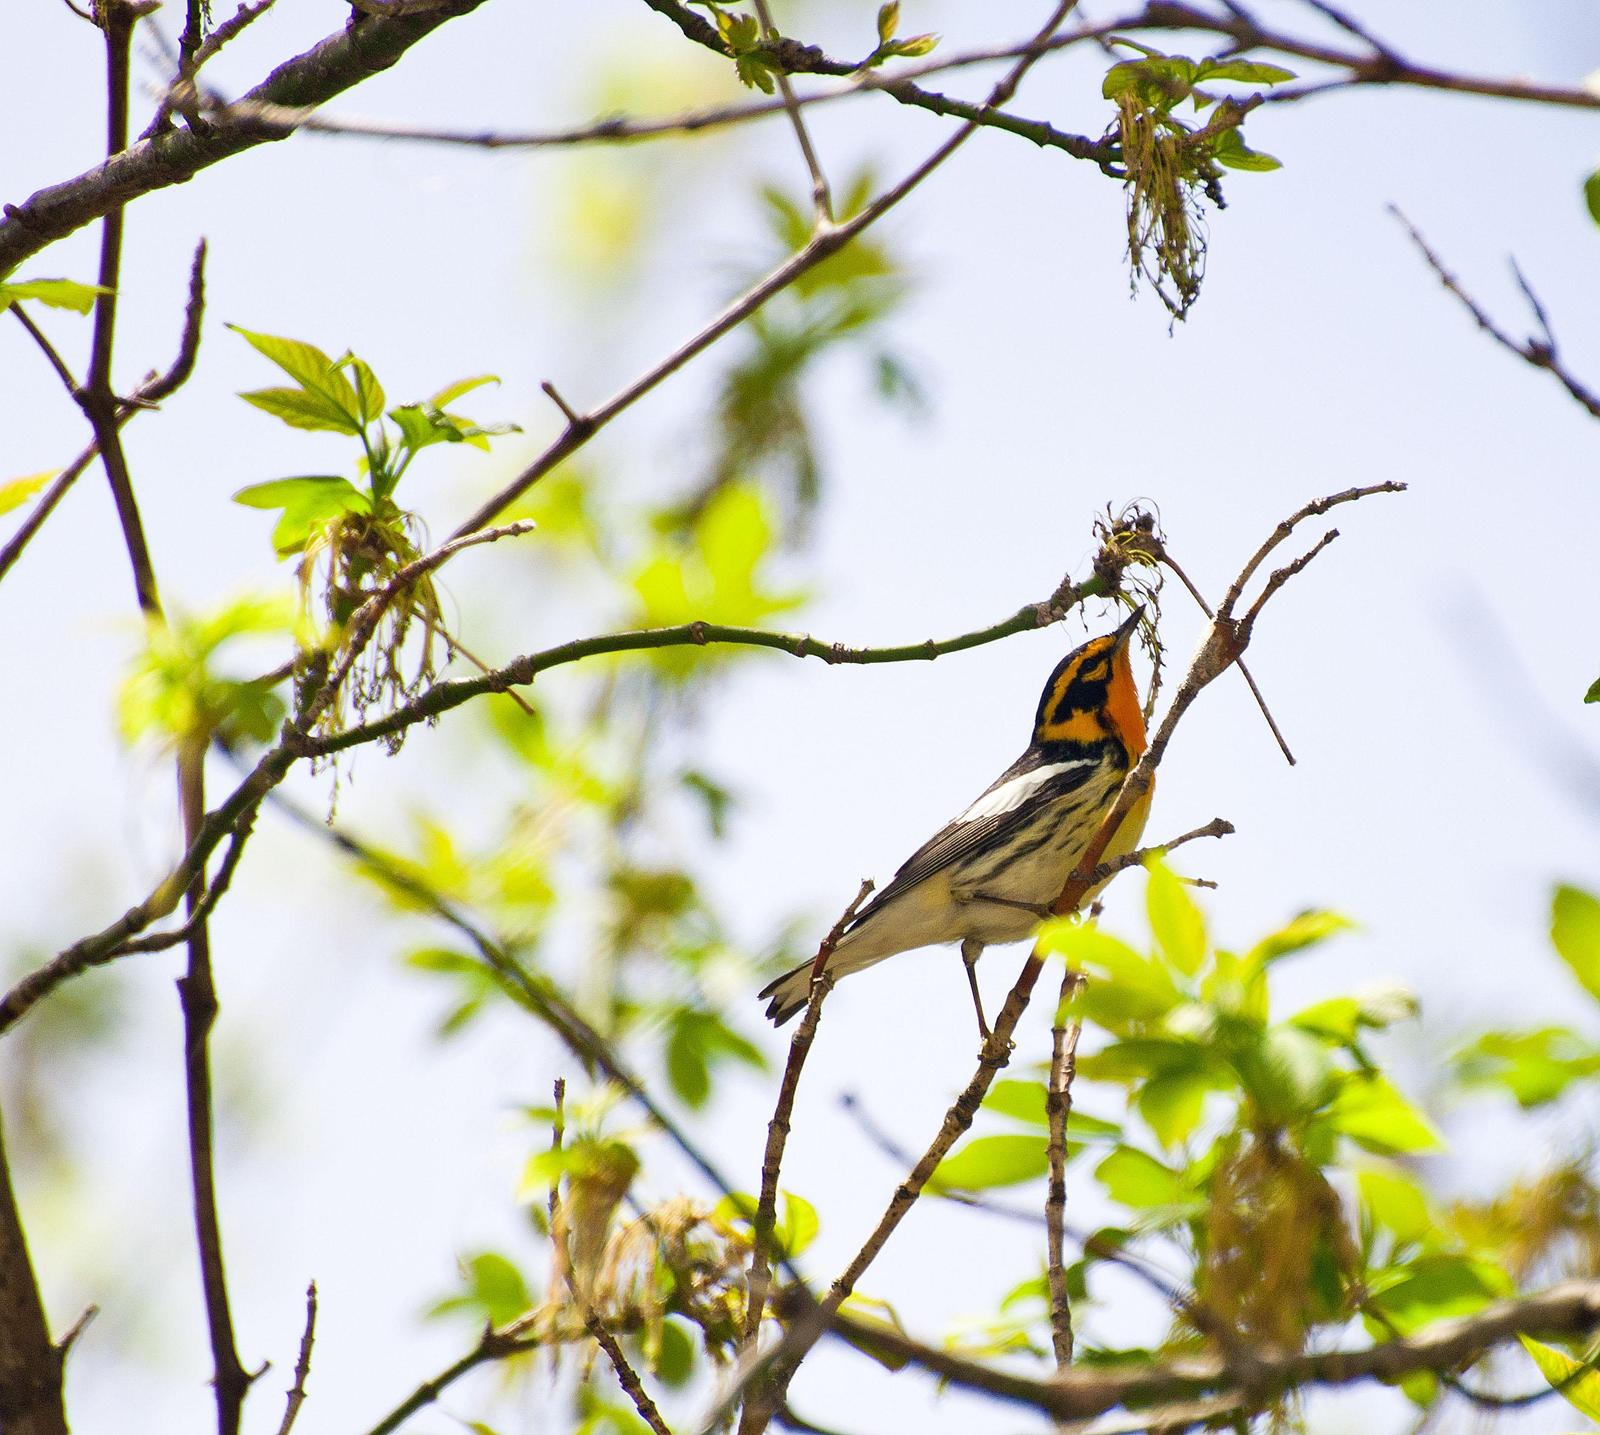 Blackburnian Warbler Photo by Mark Rozmarynowycz